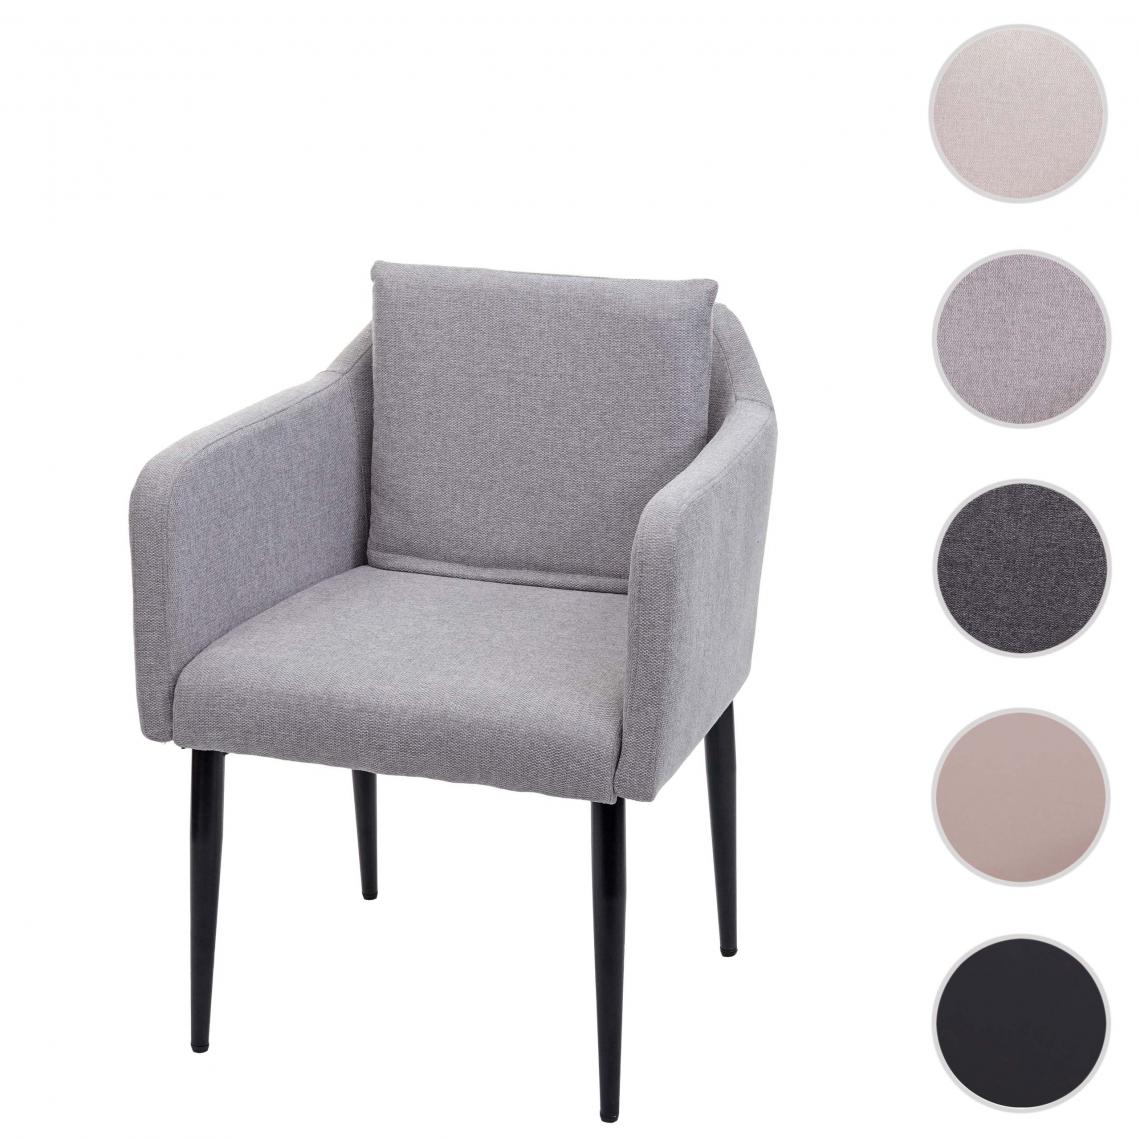 Mendler - Chaise de salle à manger HWC-H93, chaise de cuisine chaise longue ~ tissu/textile gris clair - Chaises